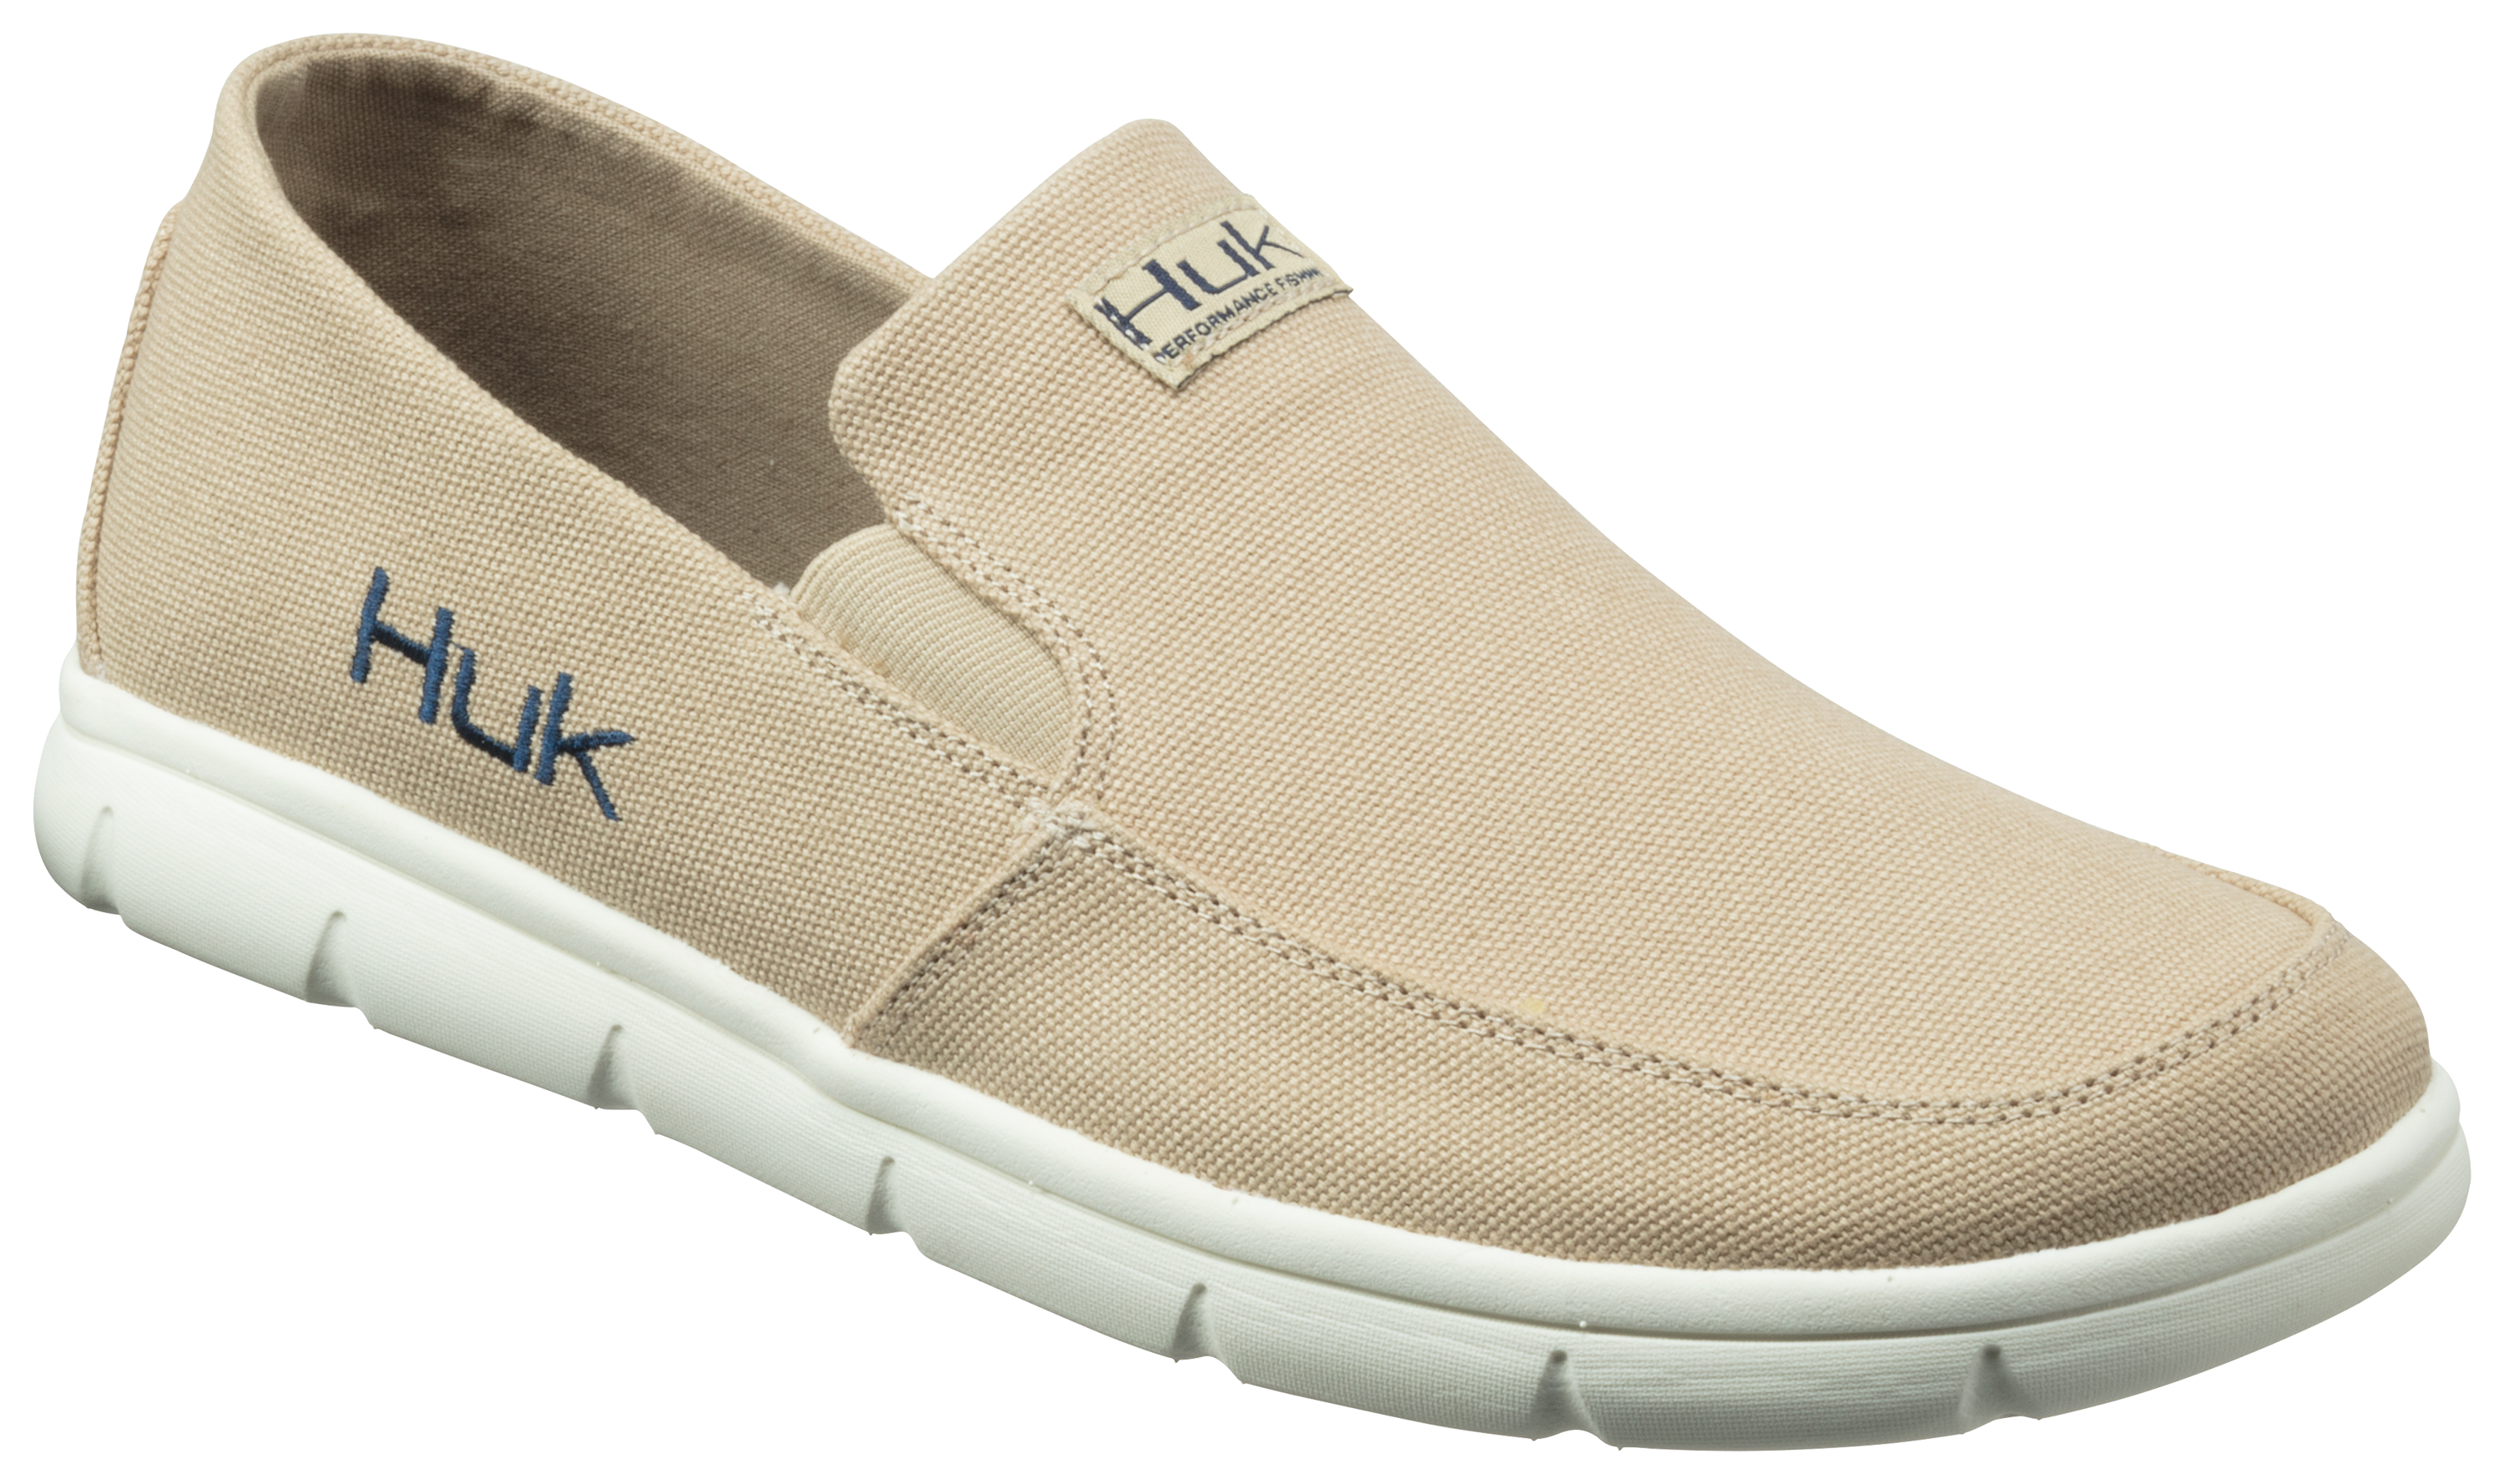 Huk Brewster Boat Shoes for Men